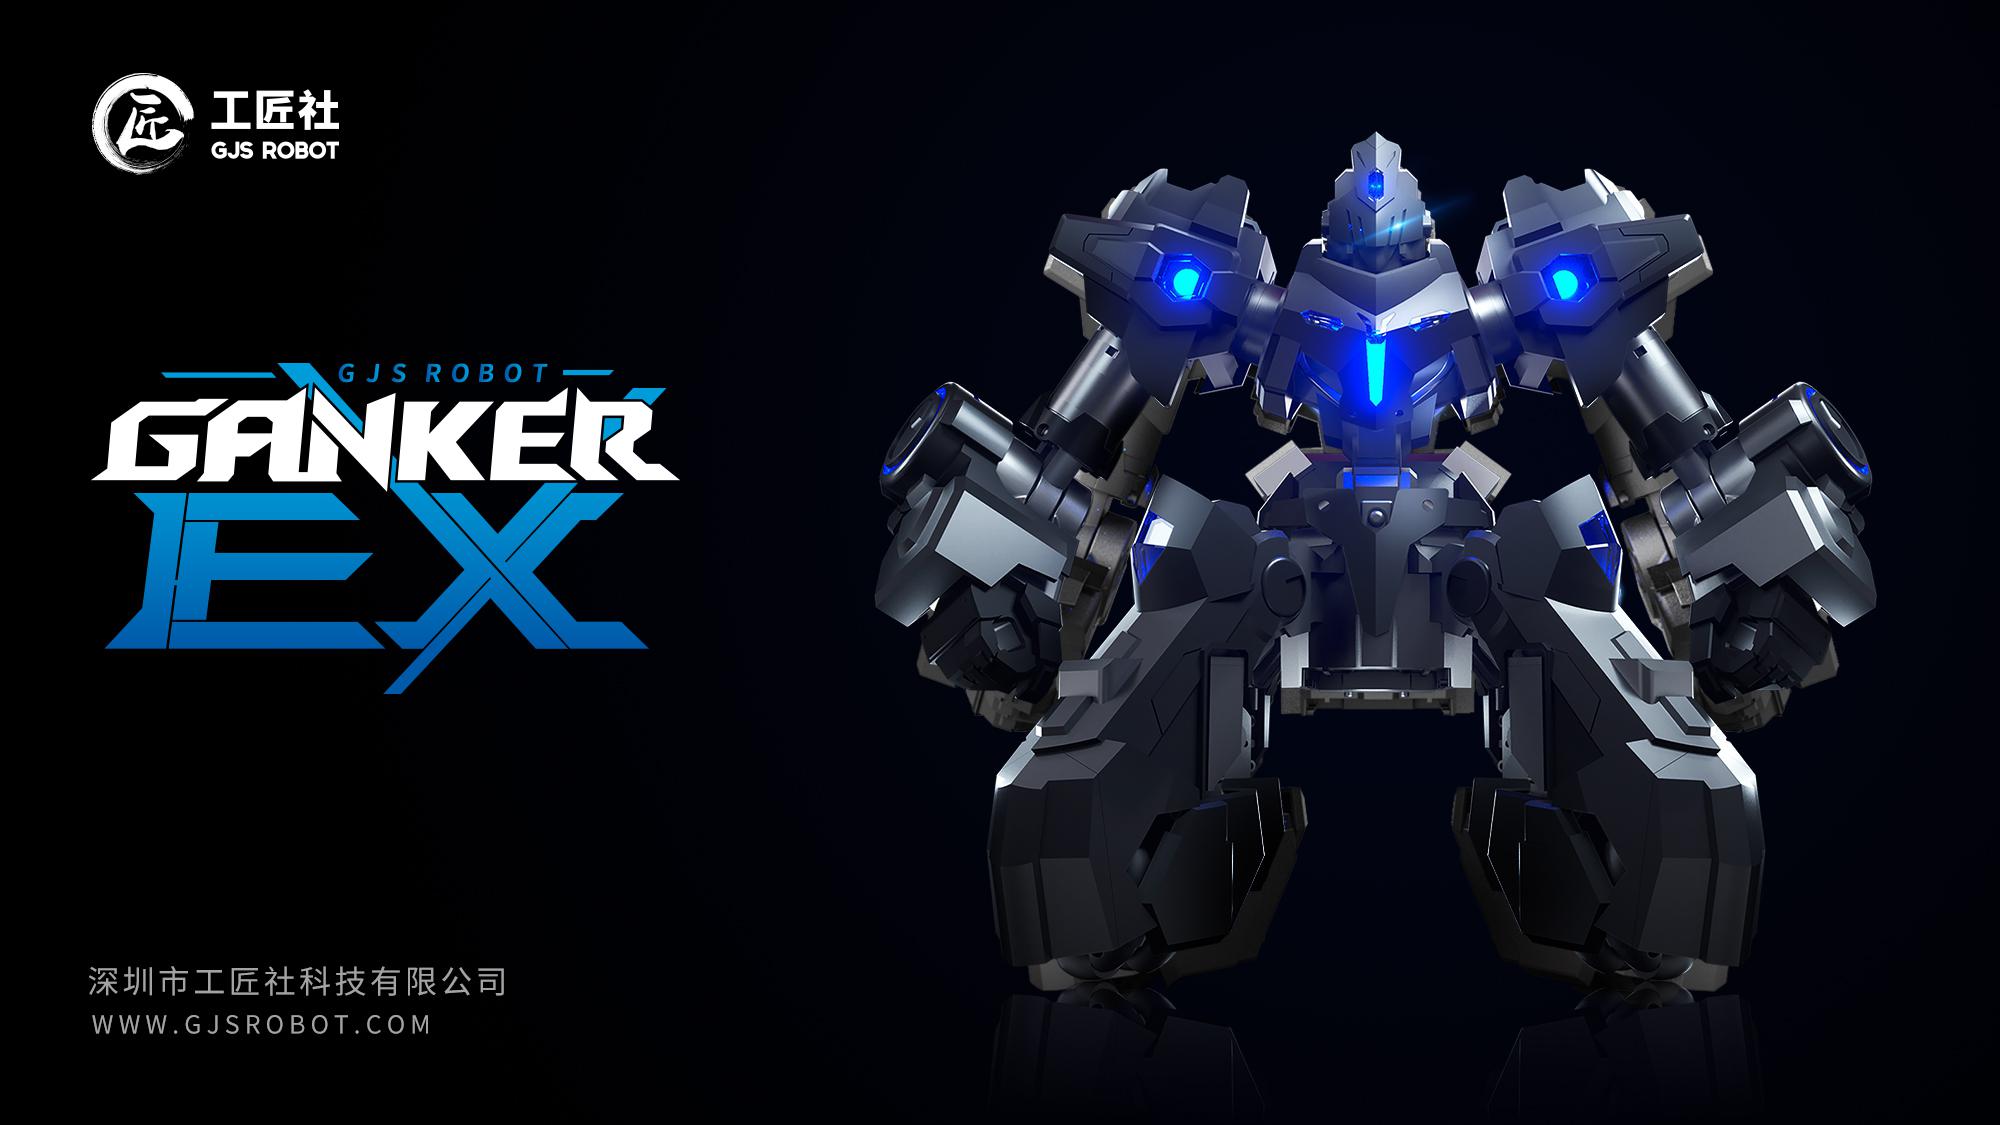 工匠社GANKER EX竞技格斗机器人于7月26日京东首发